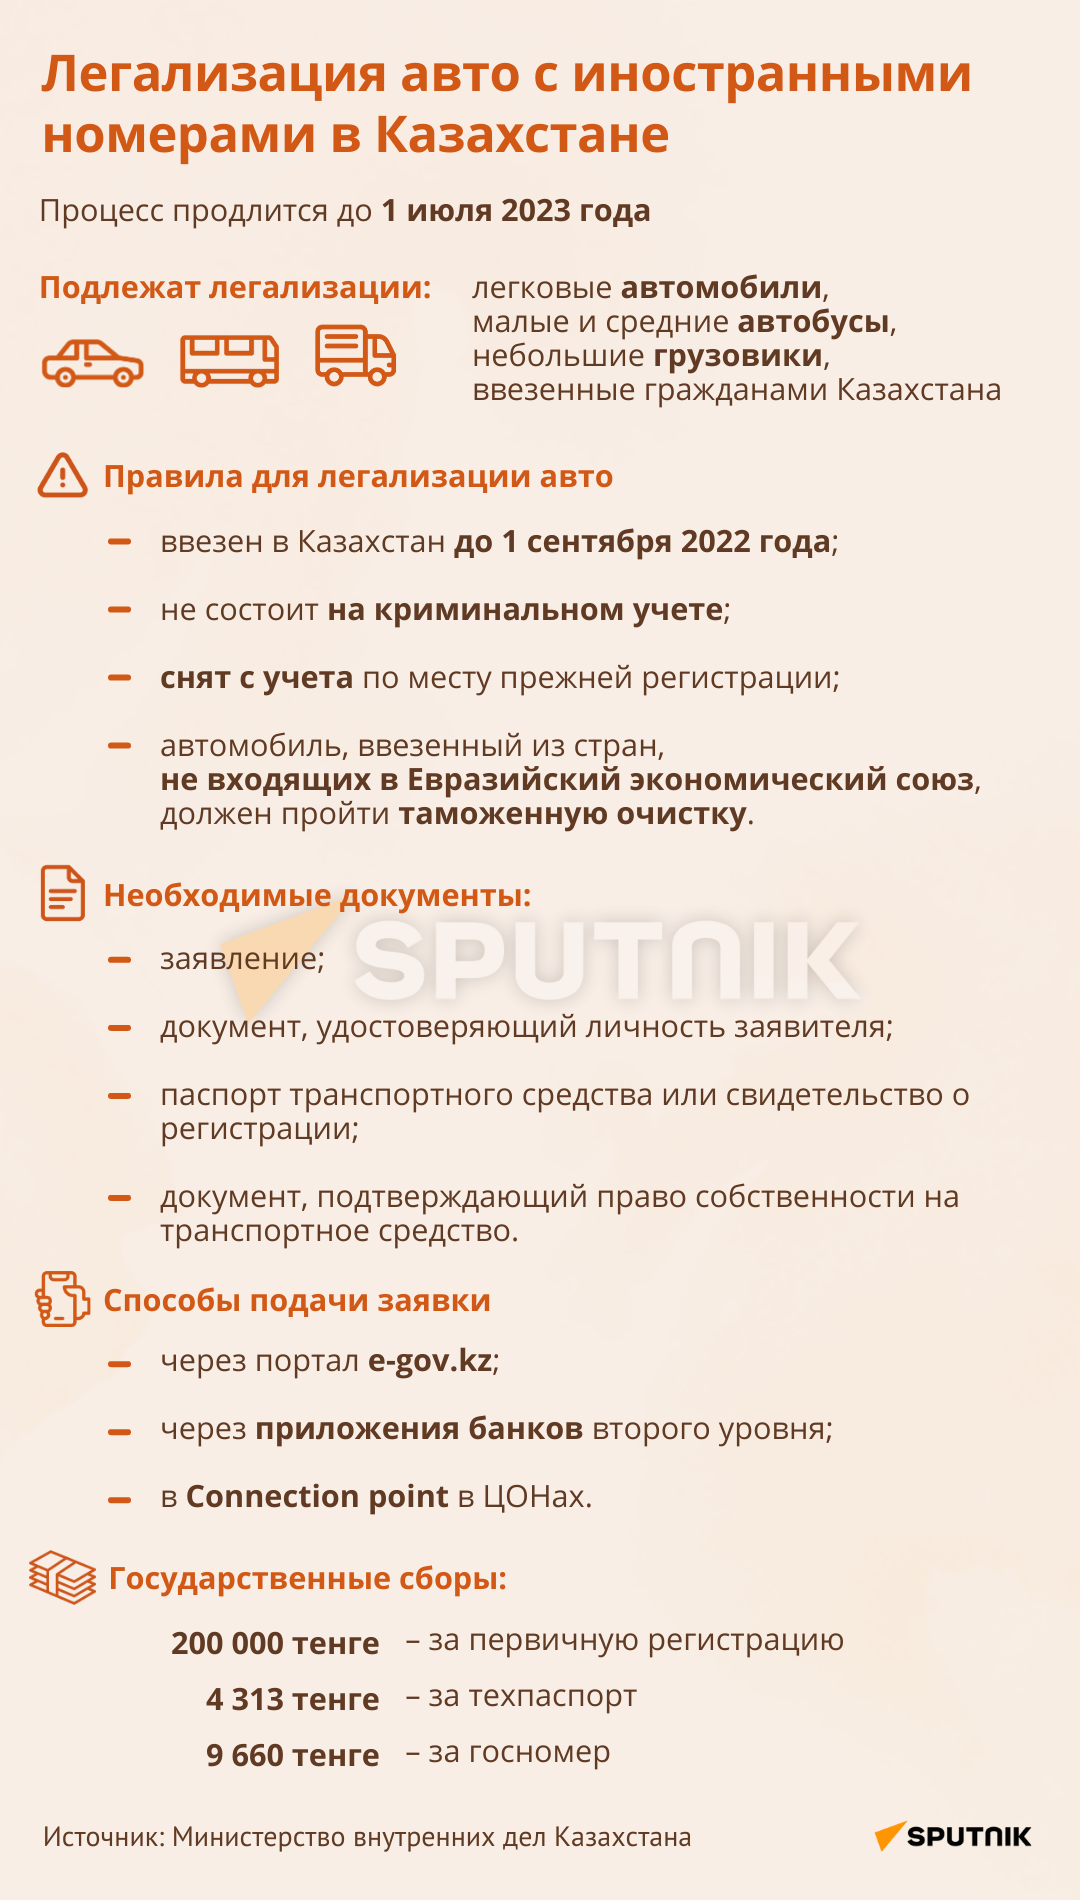 Легализация автомобилей с иностранными номерами в Казахстане - Sputnik Казахстан